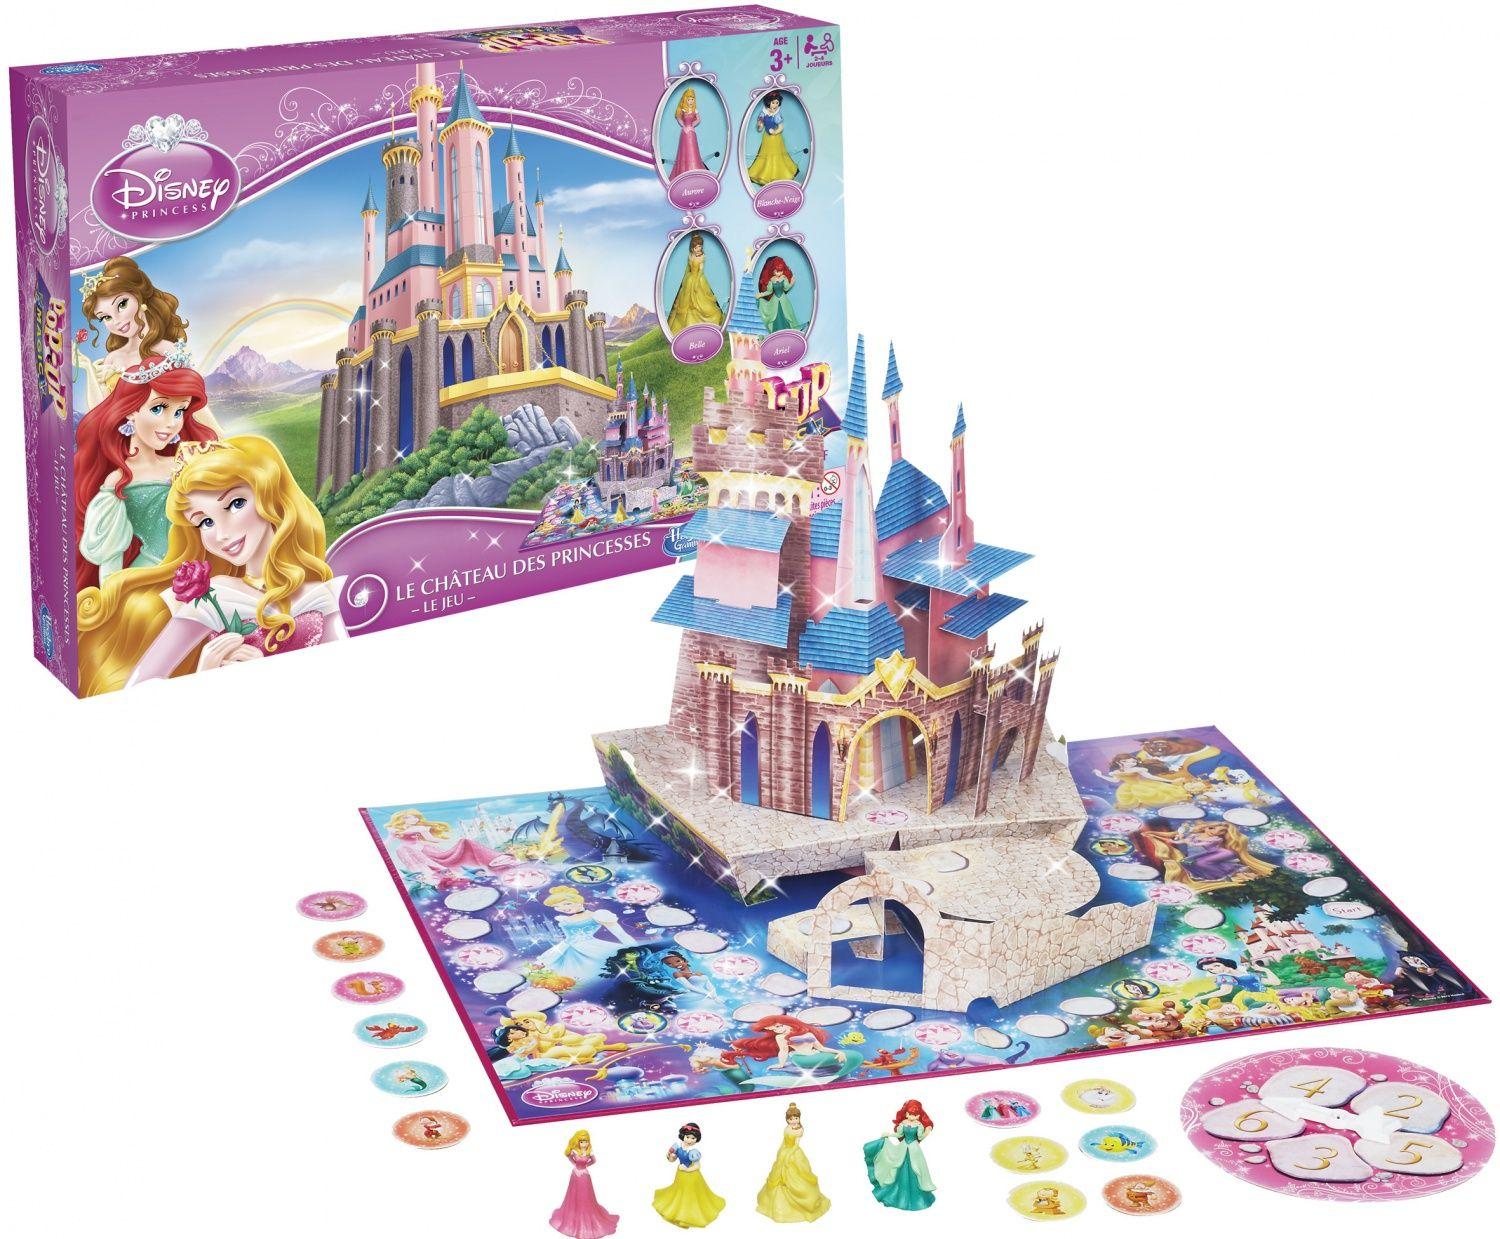 Les Princesses Posent Devant Le Chateau - Disney Traditions